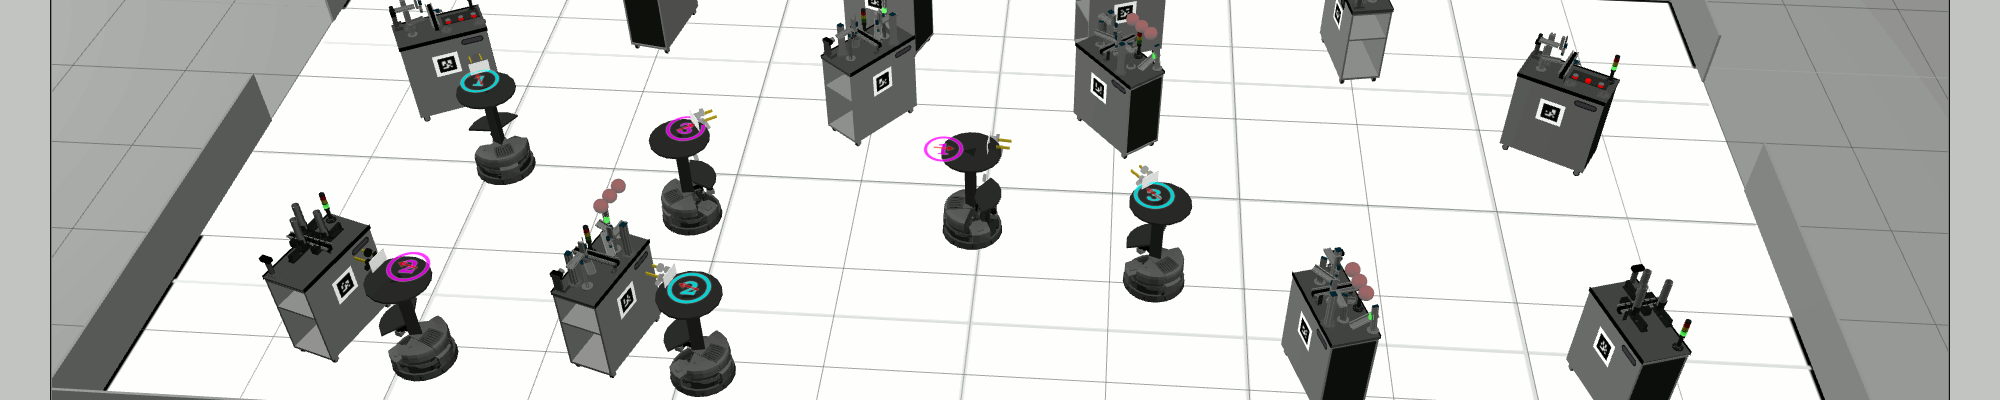 RoboCup Logistics League Simulation